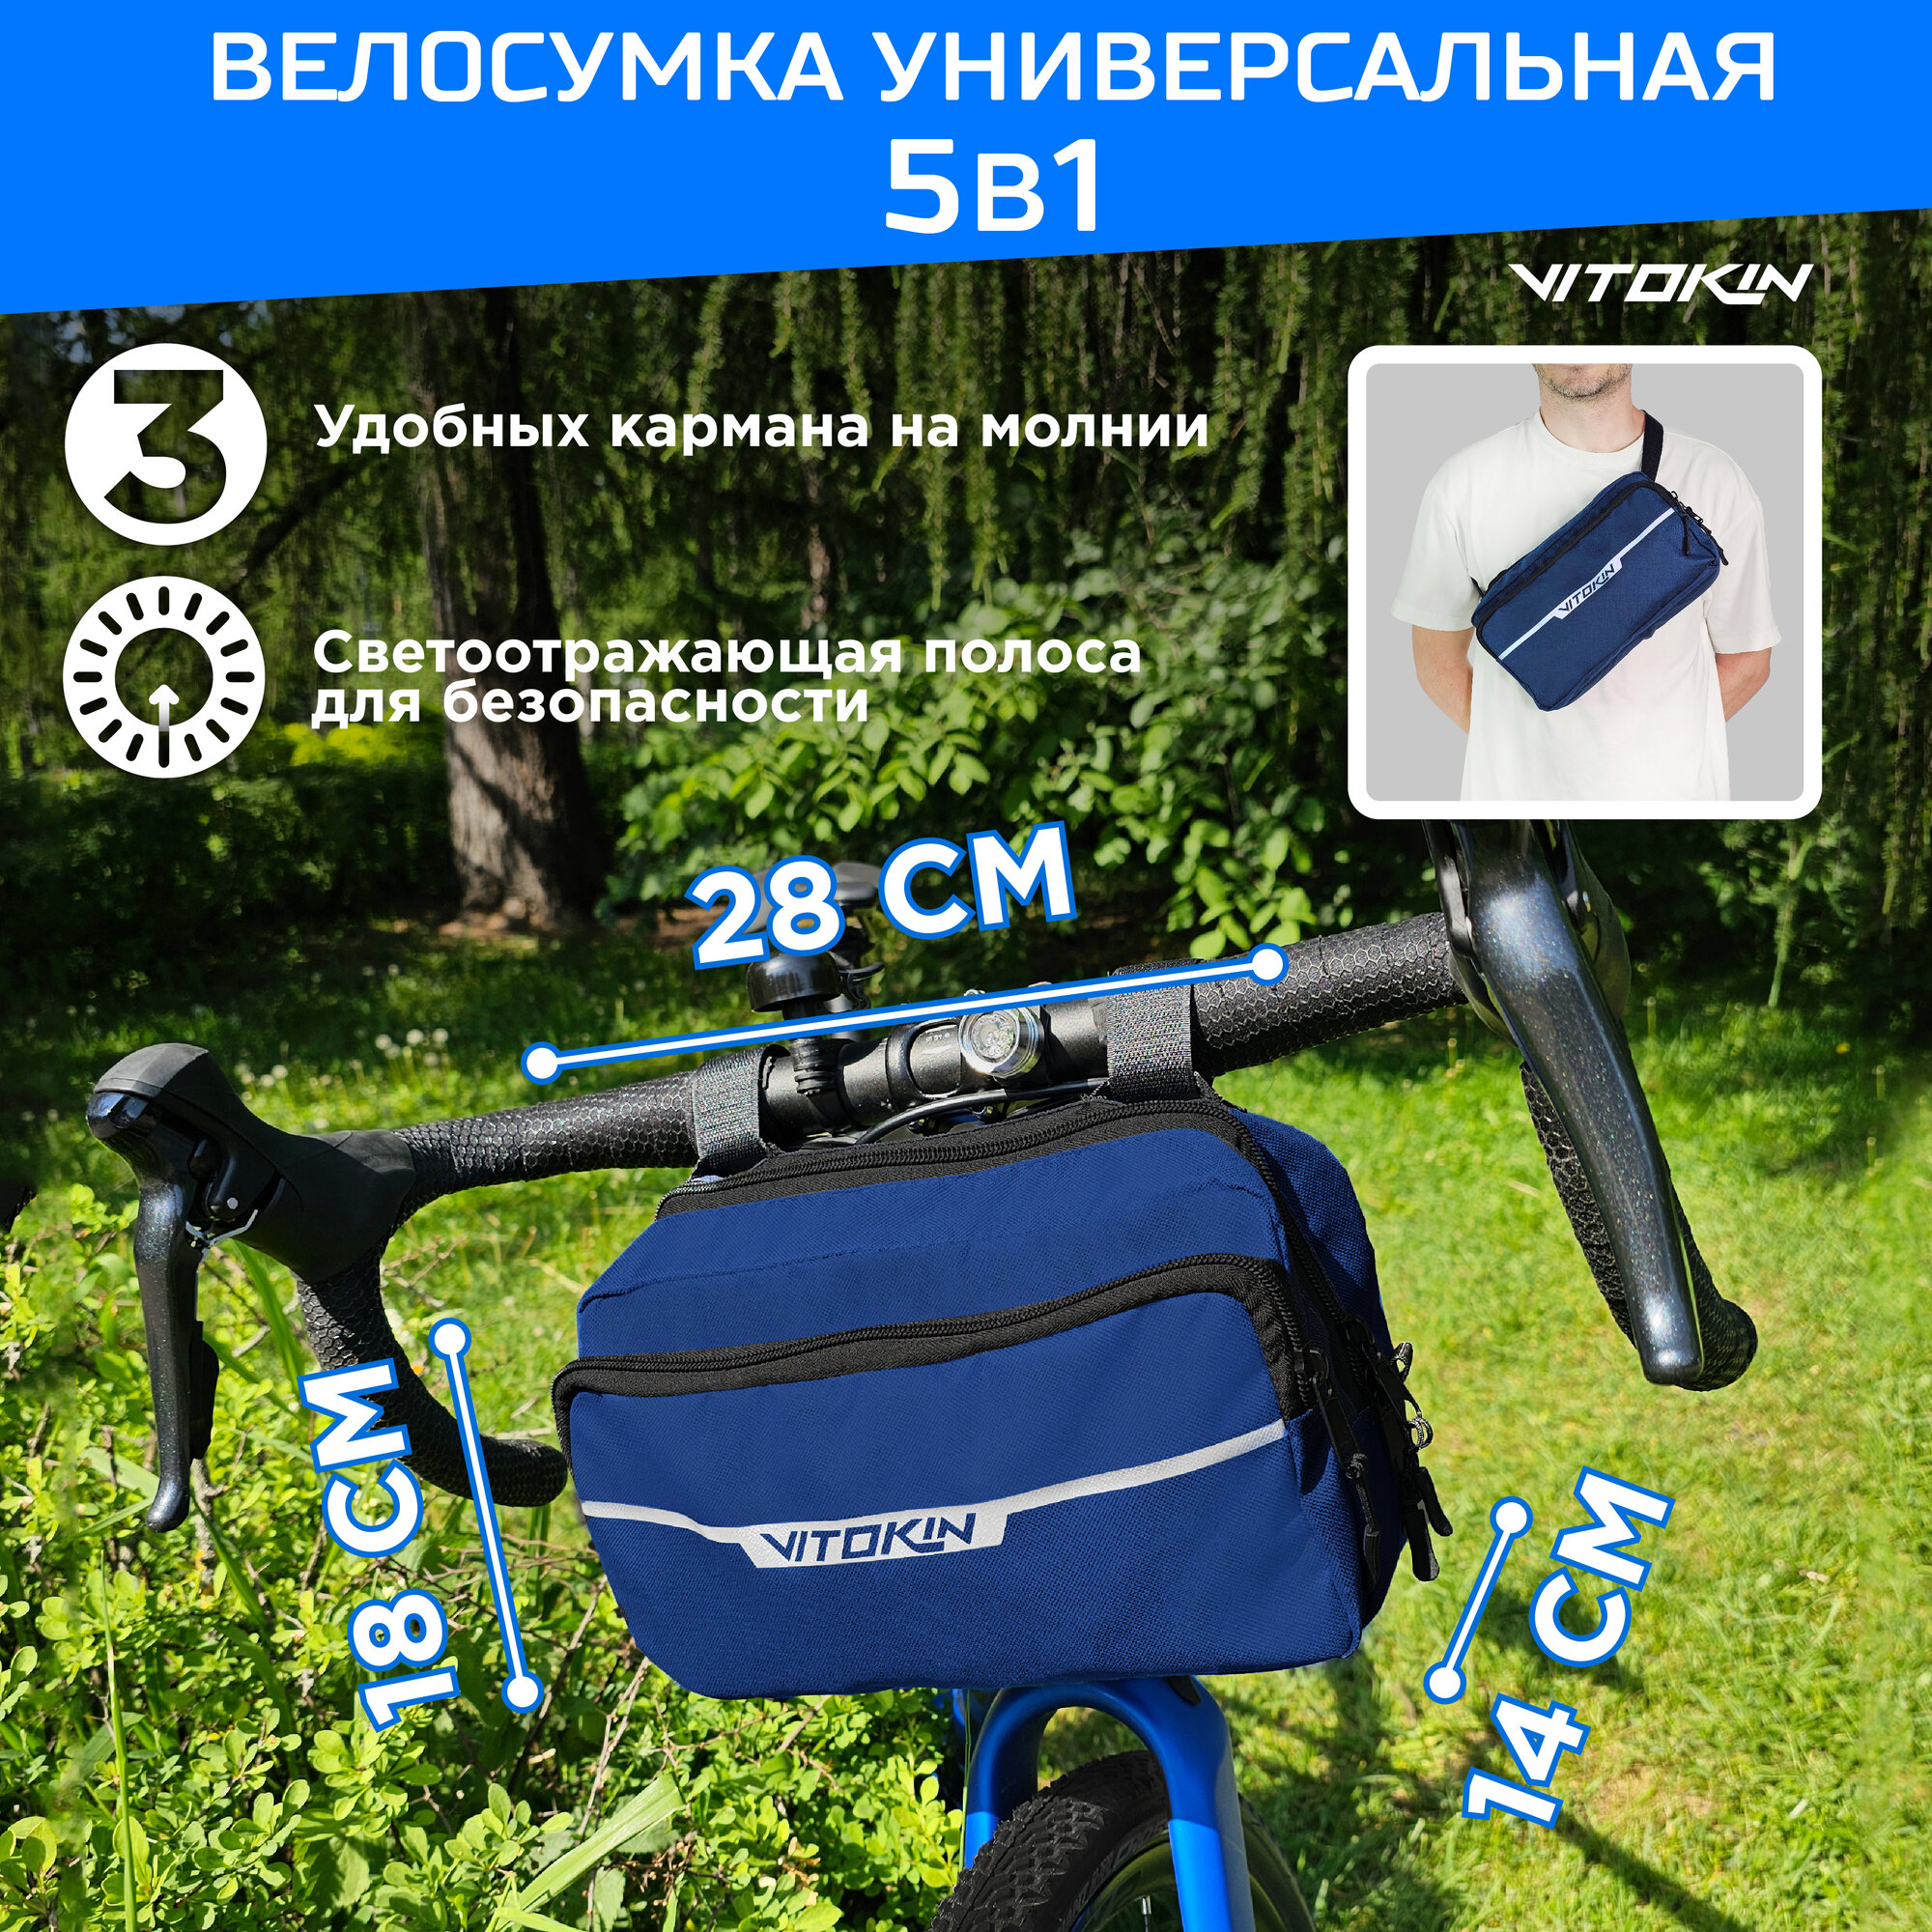 Велосумка на руль спортивная с ремнем для пояса VITOKIN, синяя